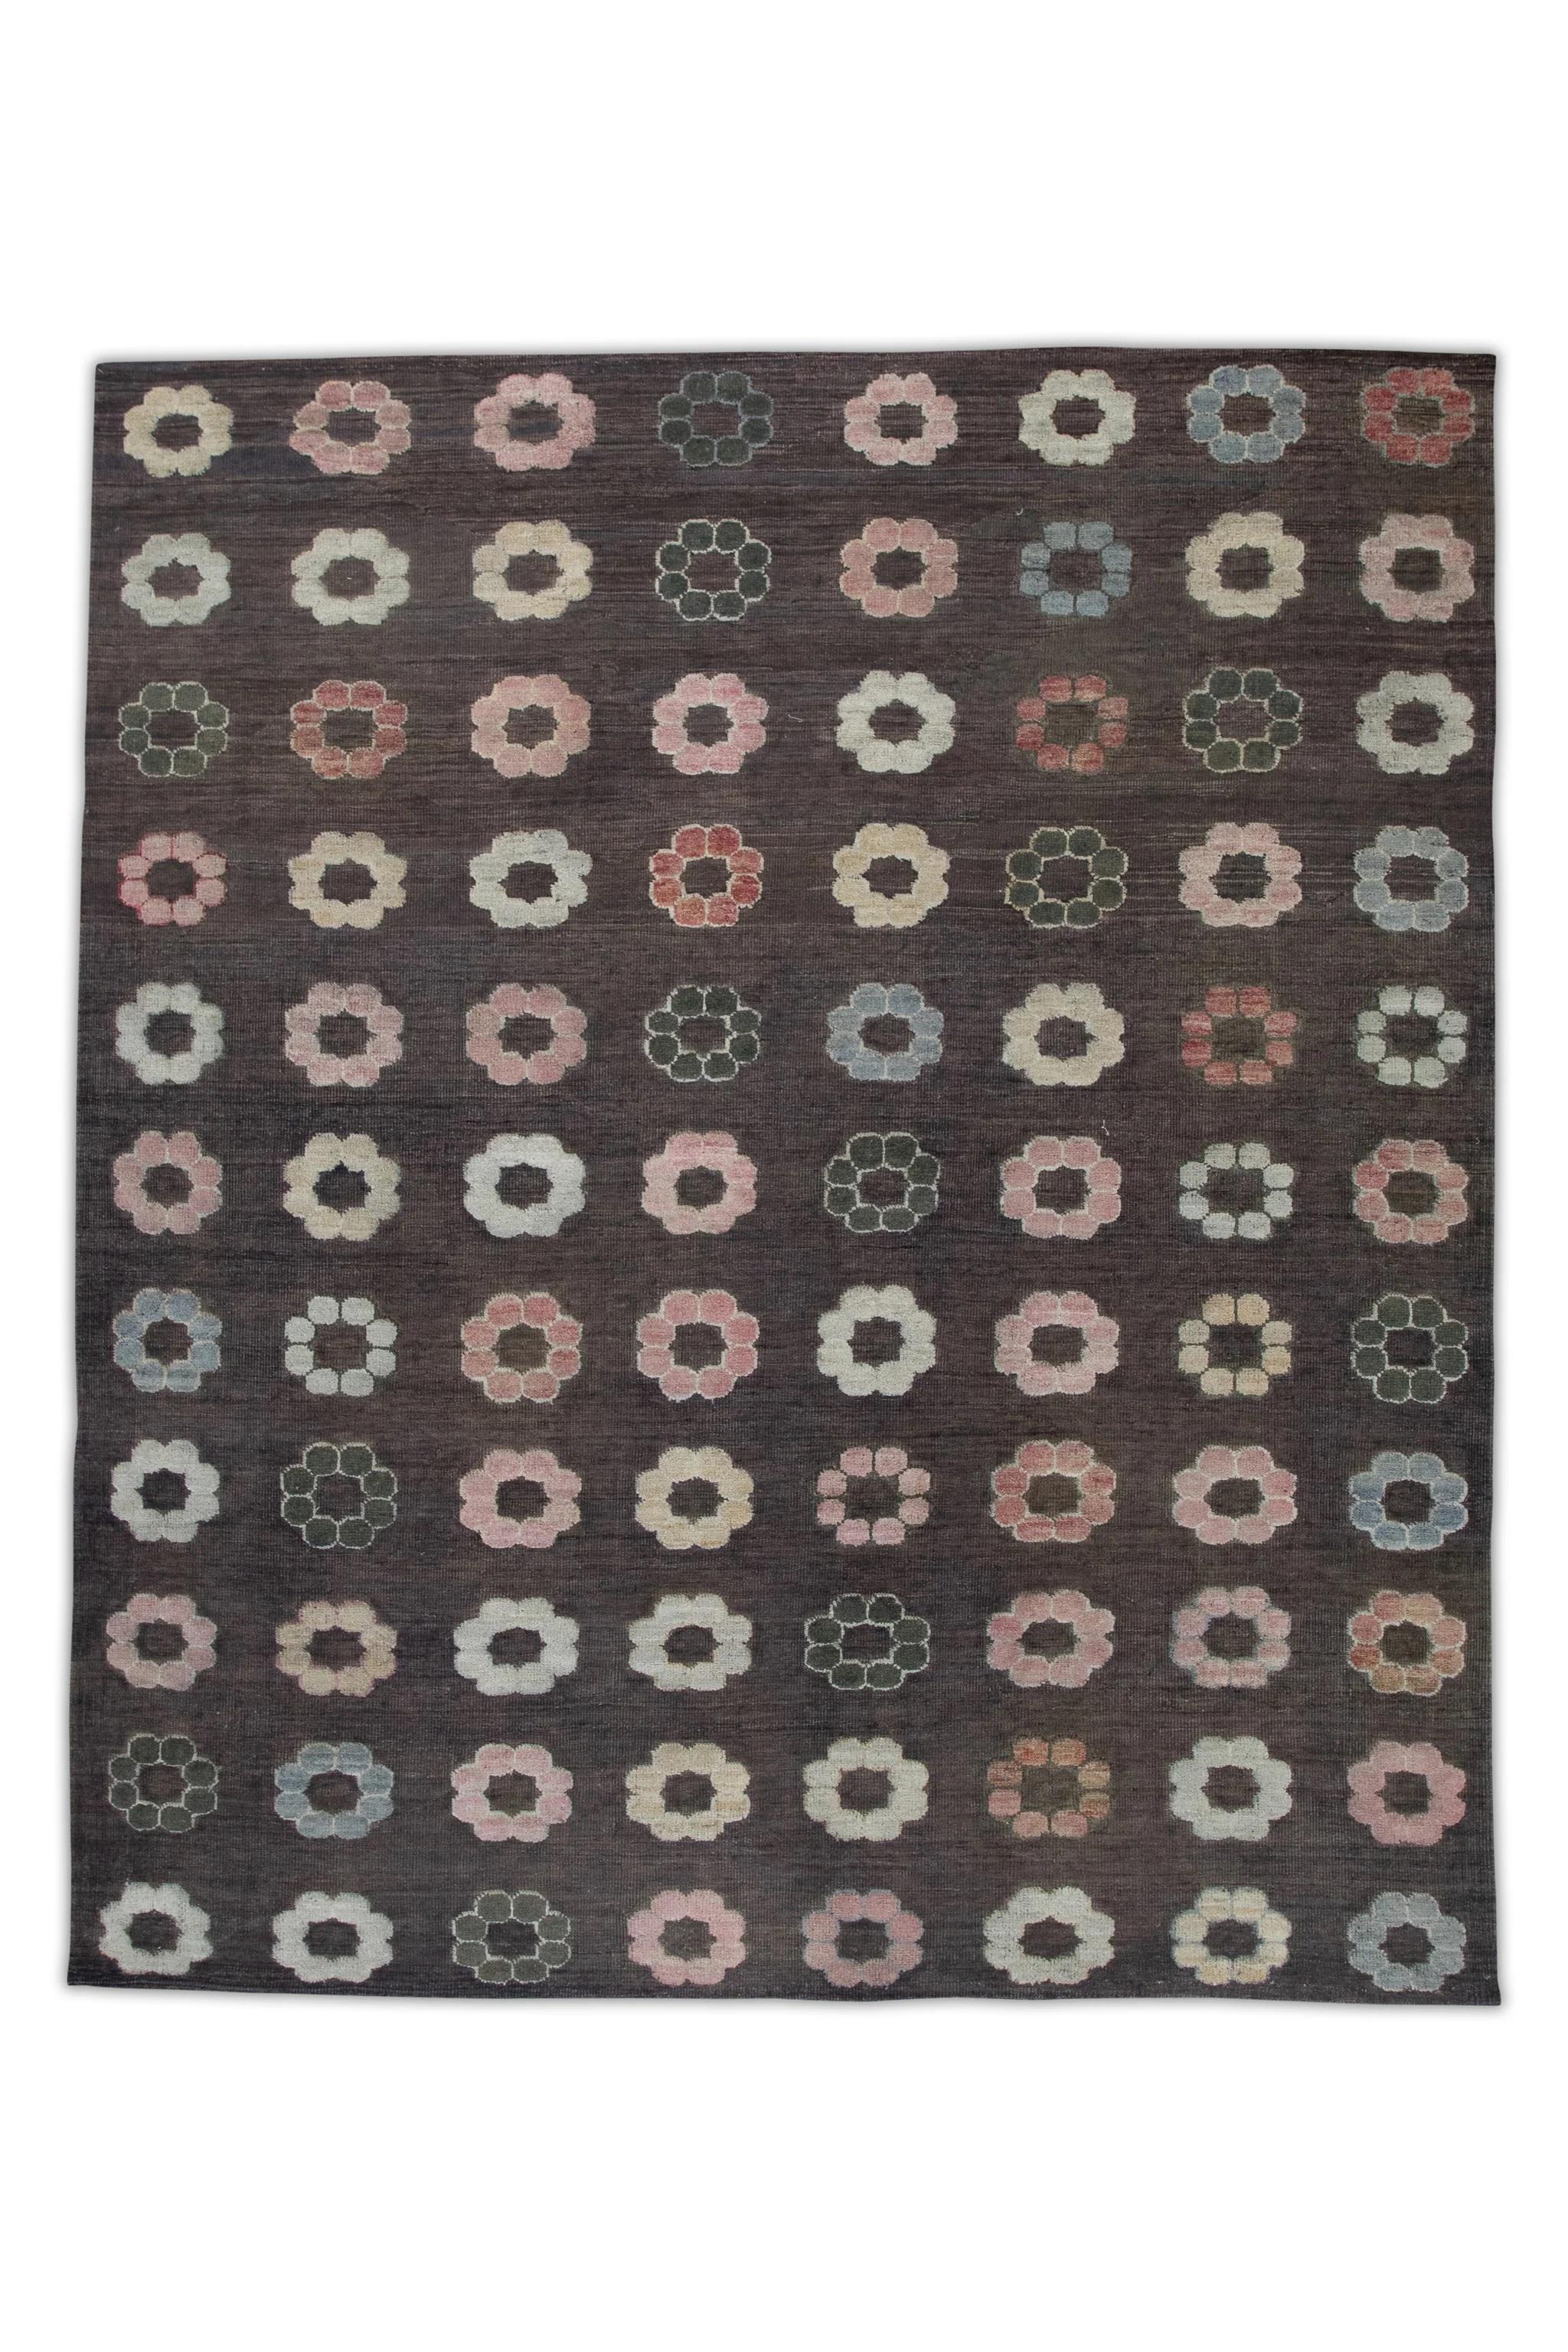 Contemporary Brown Flatweave Handmade Wool Rug in Pink Floral Pattern 8'8